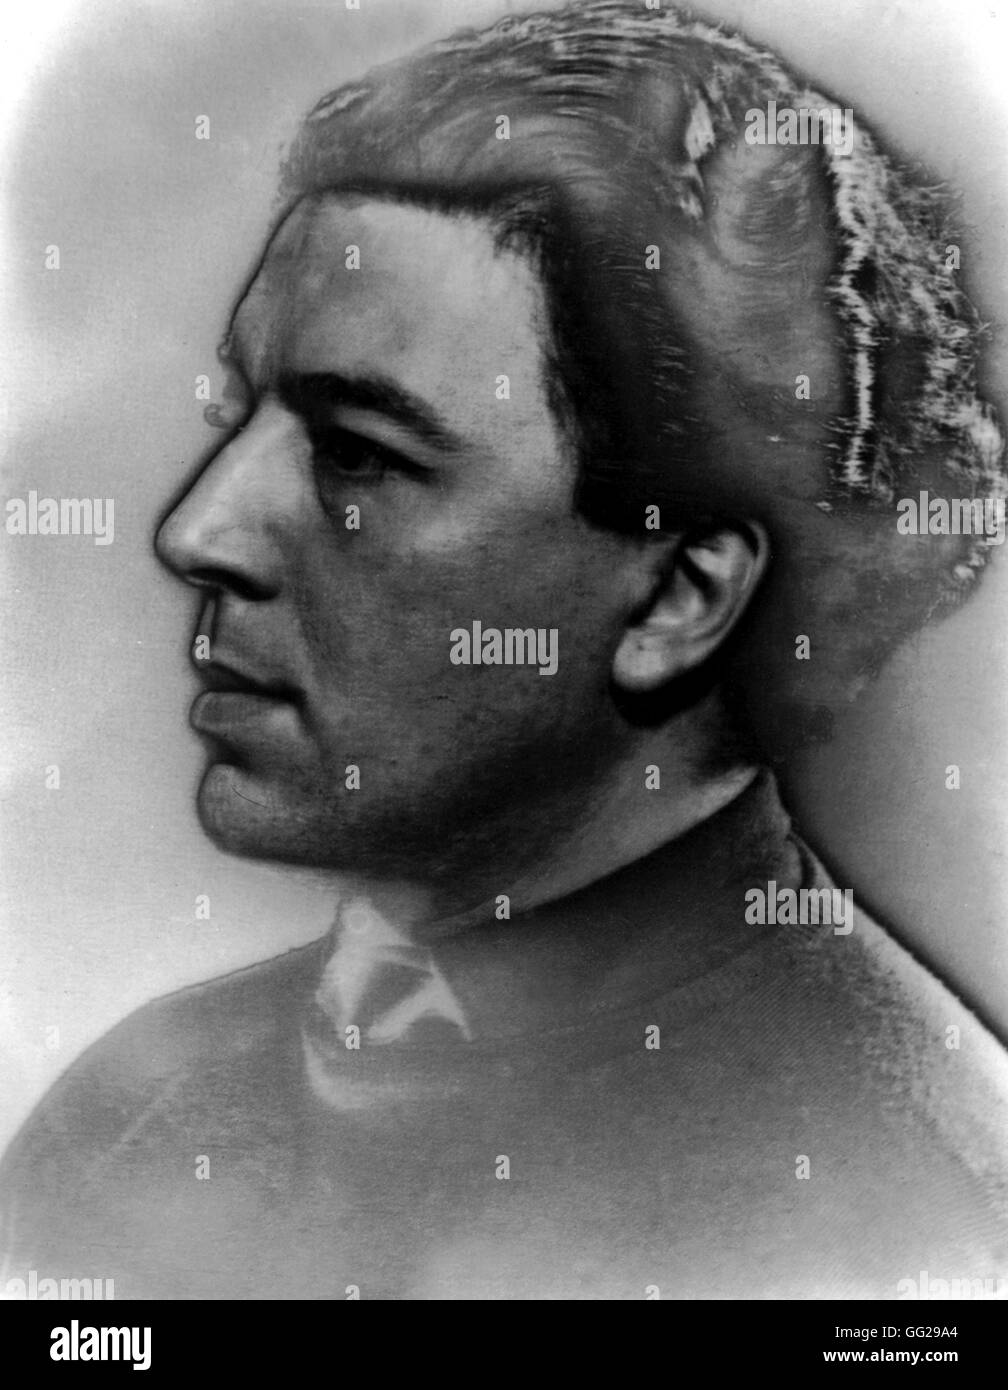 Porträt von André Breton im Jahre 1929. Foto von Man Ray des 20. Jahrhunderts Frankreich Stockfoto